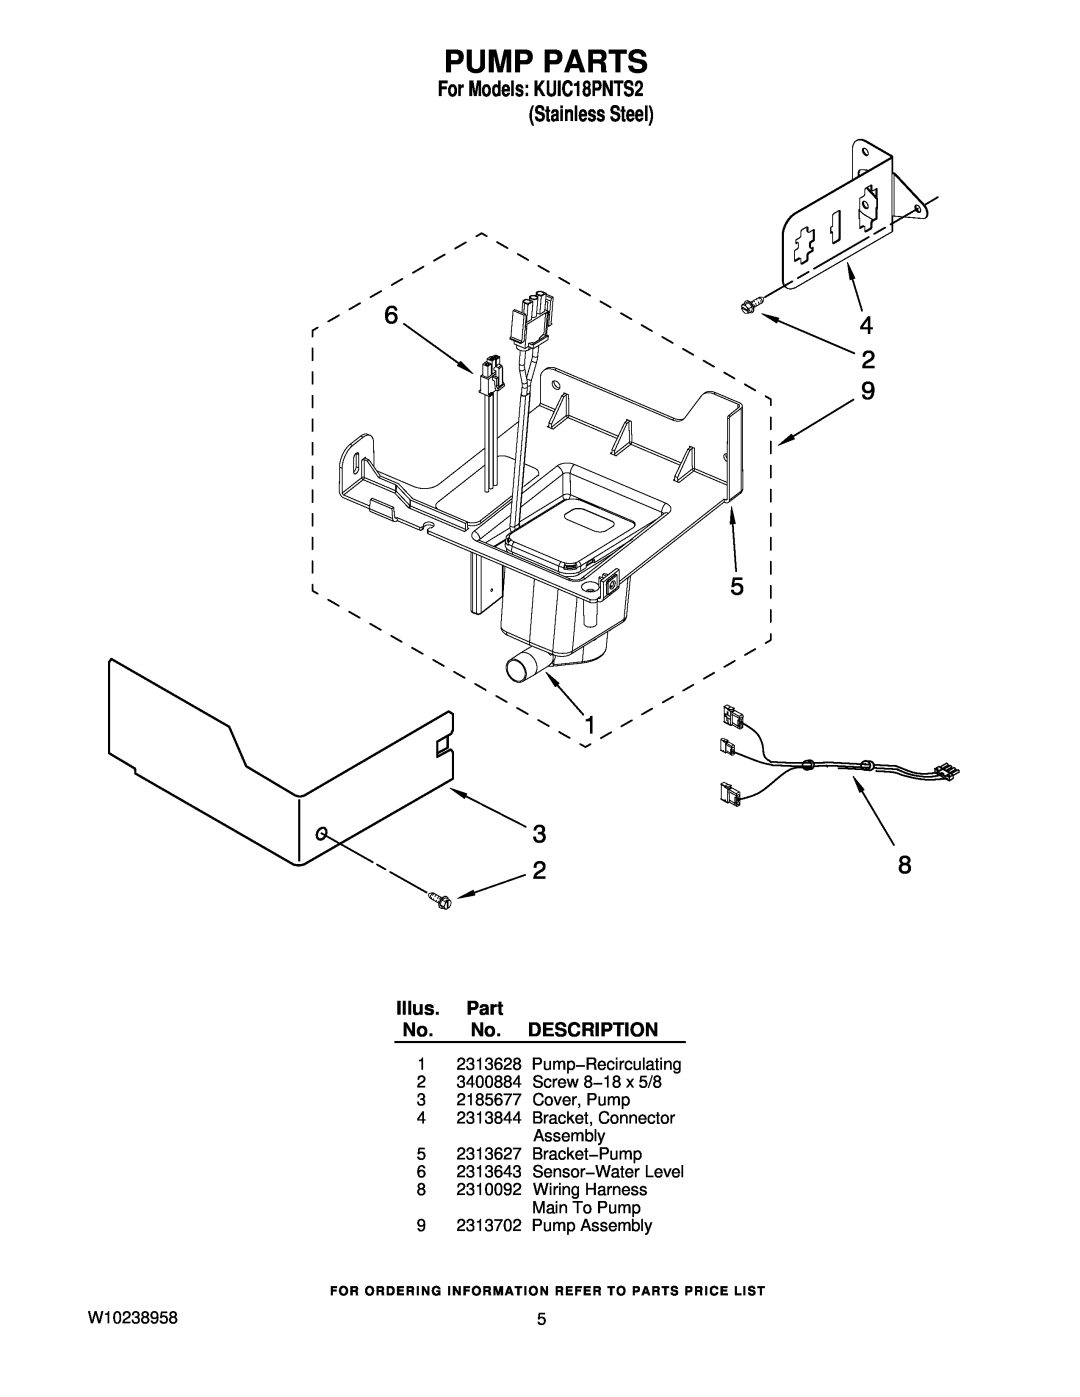 KitchenAid manual Pump Parts, Illus. Part No. No. DESCRIPTION, For Models KUIC18PNTS2 Stainless Steel 